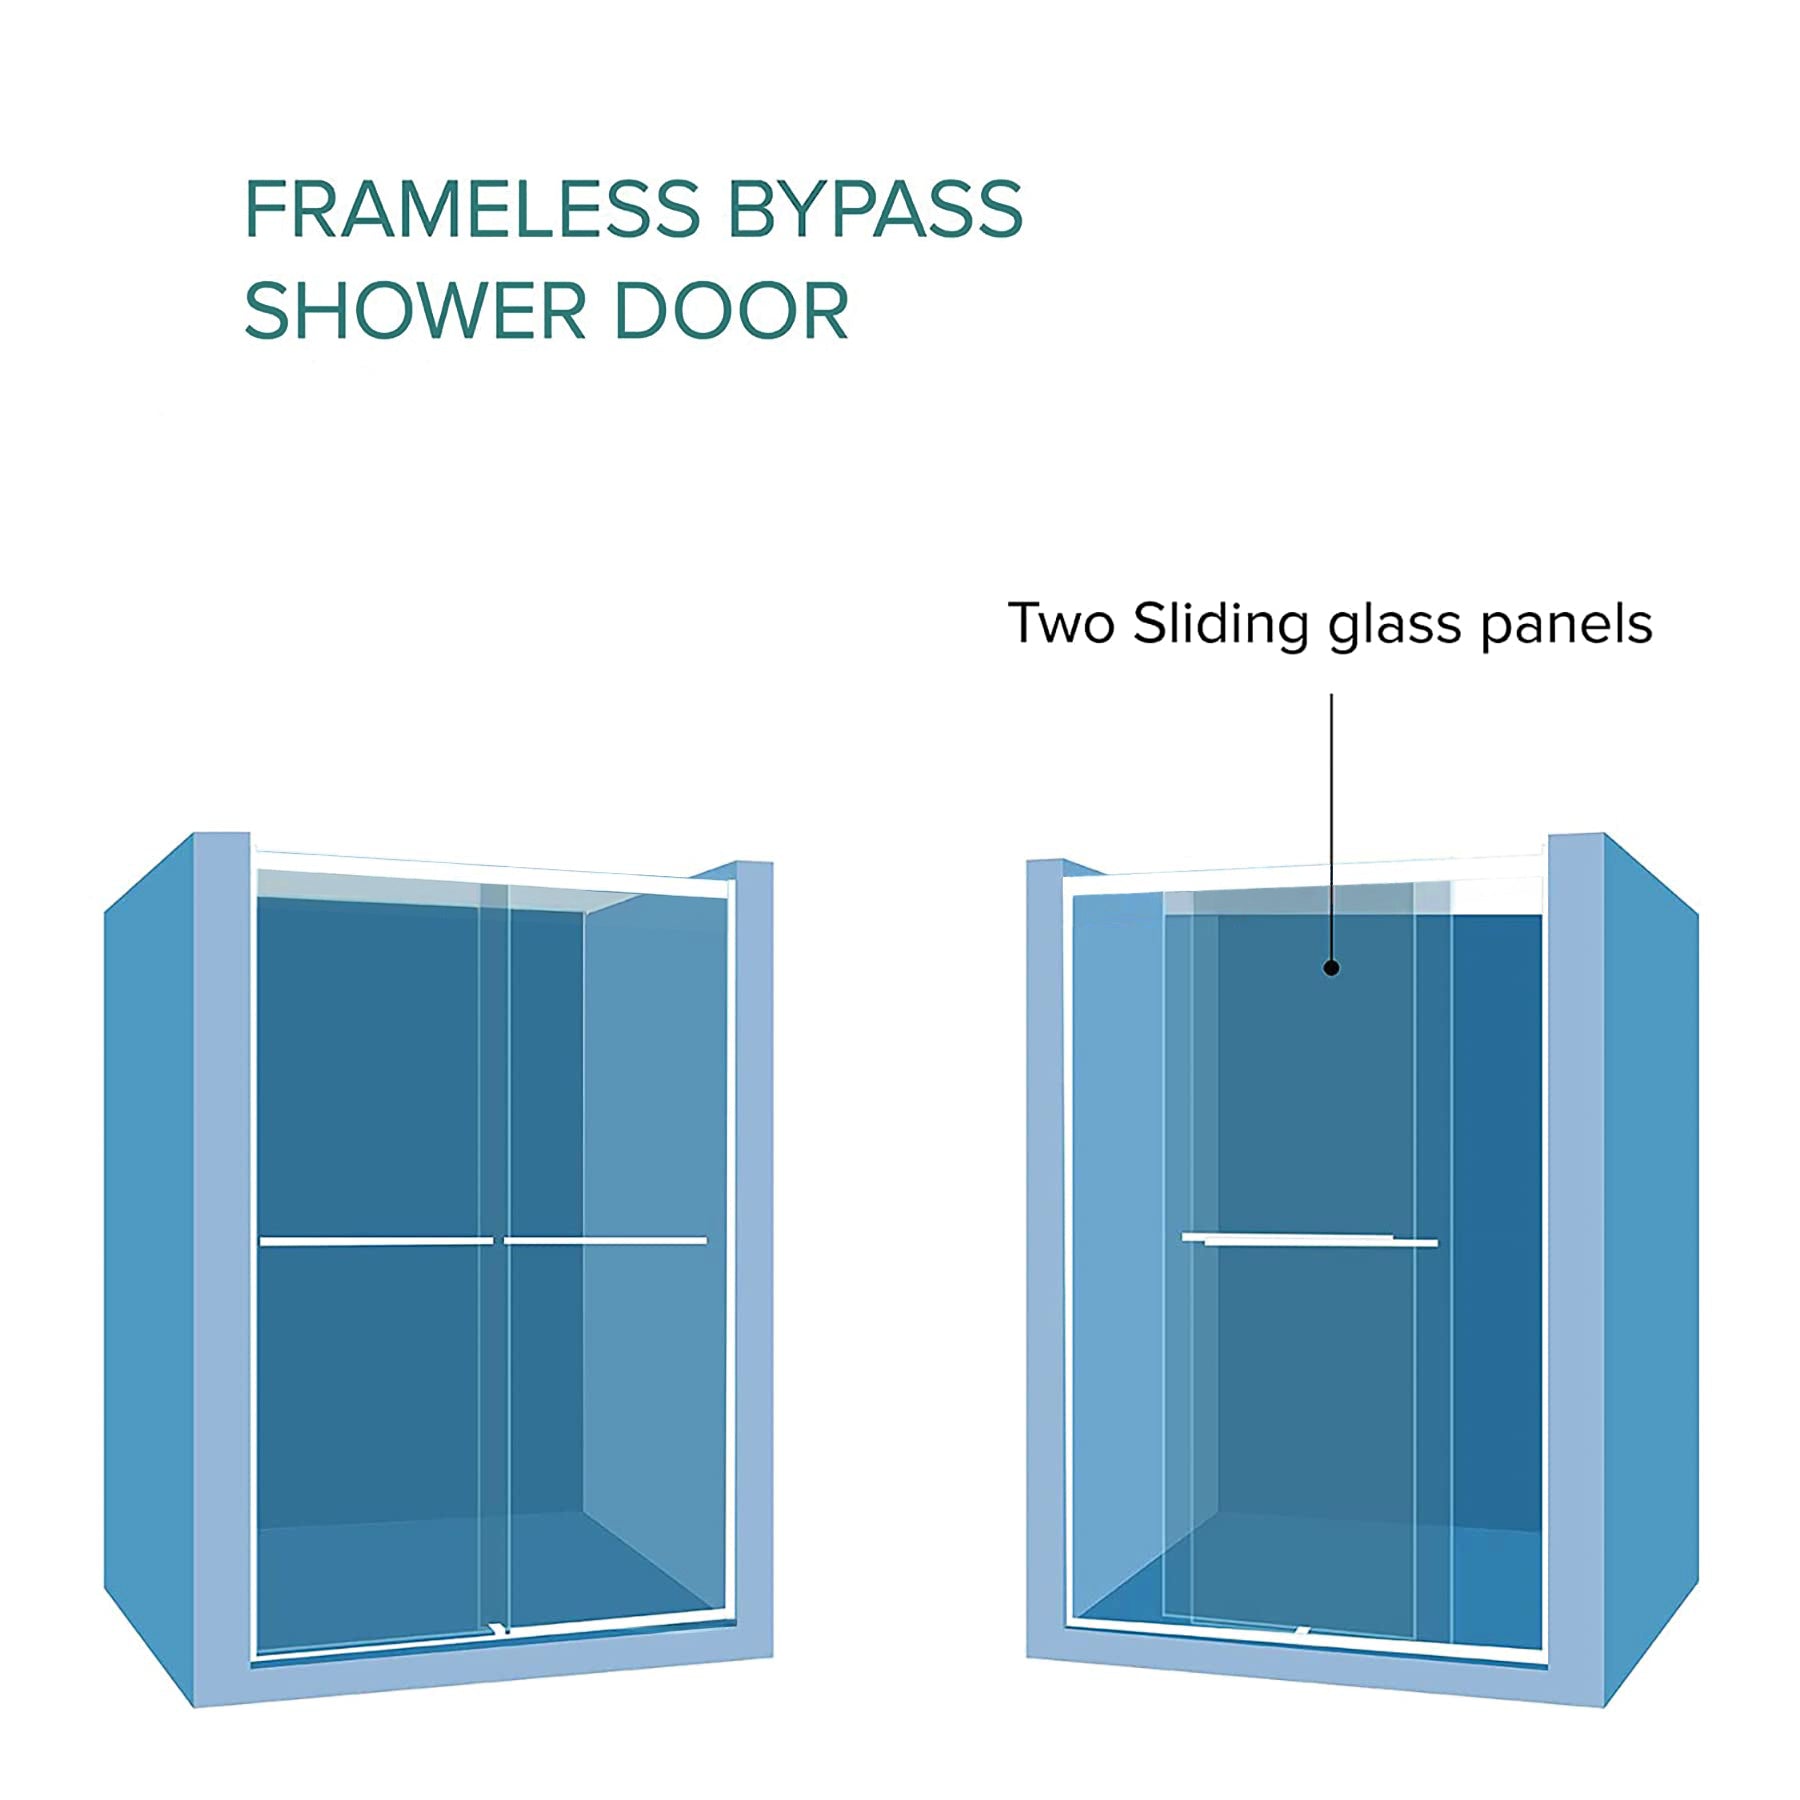 Dreamwerks Bright Chrome Sliding Shower Door - Available in 2 sizes